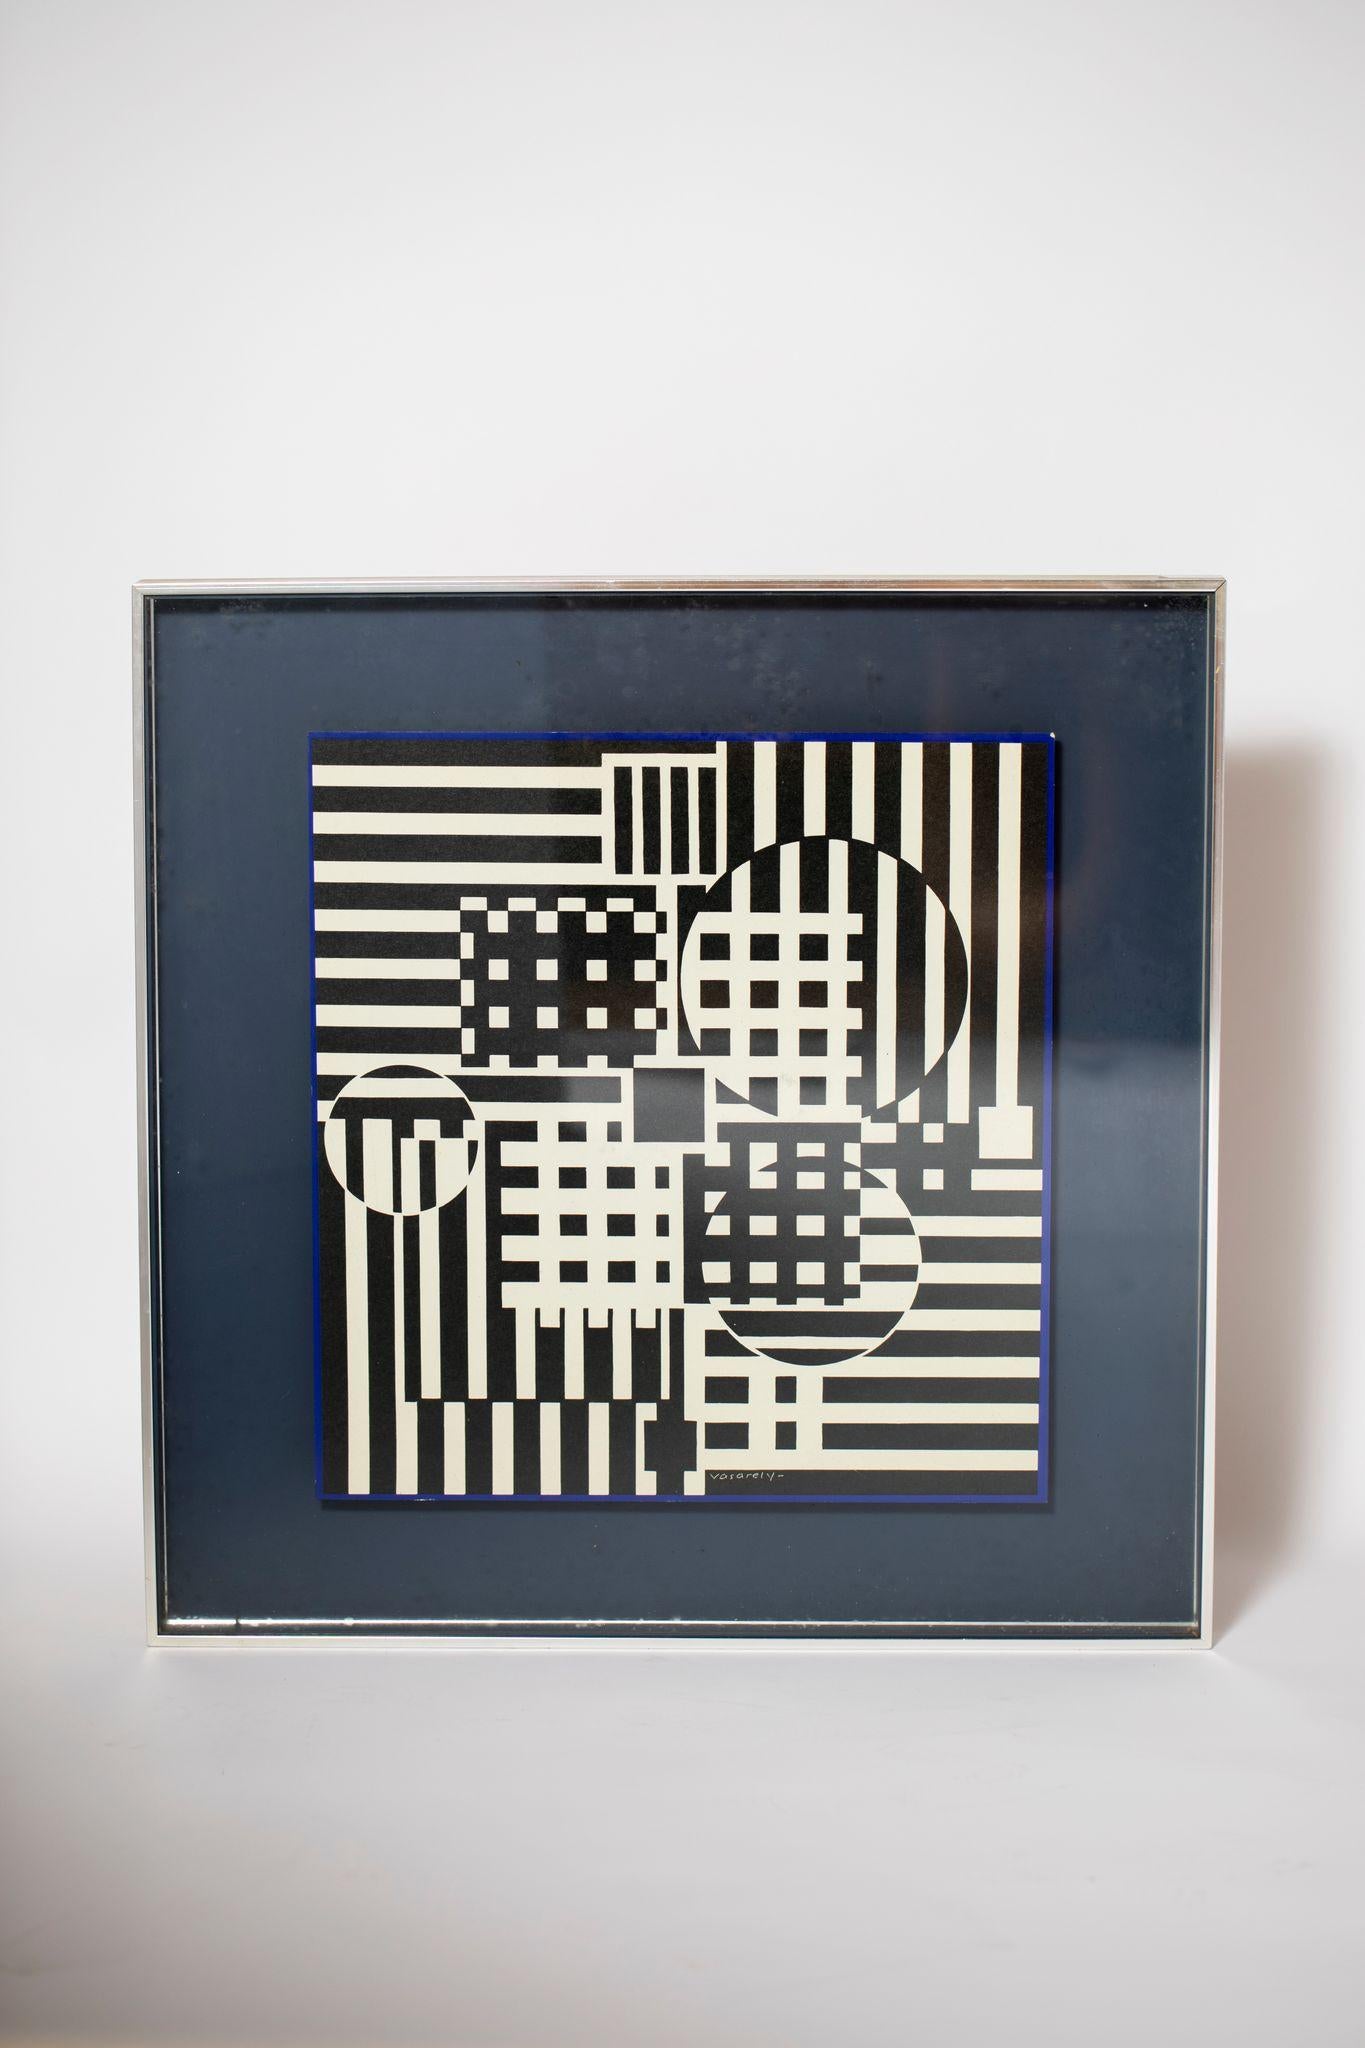 Gerahmter geometrischer Druck von Victor Vasarely, signiert.

Originalrahmen aus gebürstetem Edelstahl.